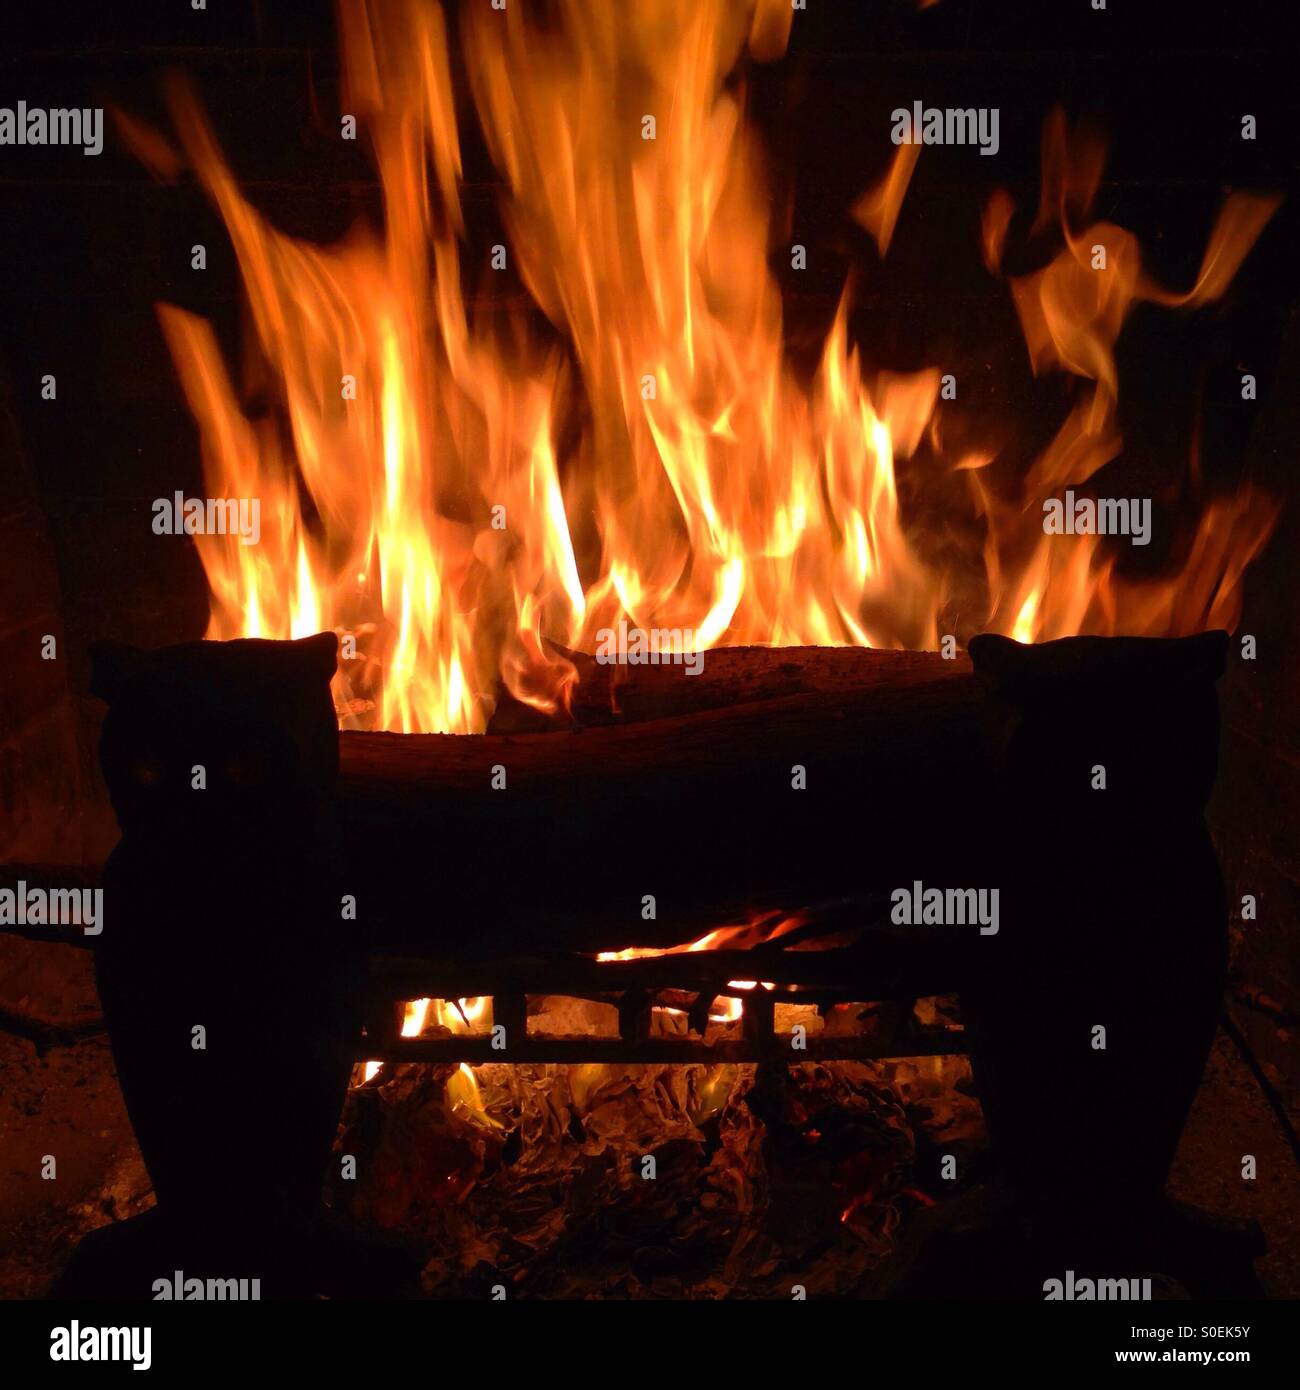 Le feu brûlant dans une cheminée avec des flammes orange. Banque D'Images